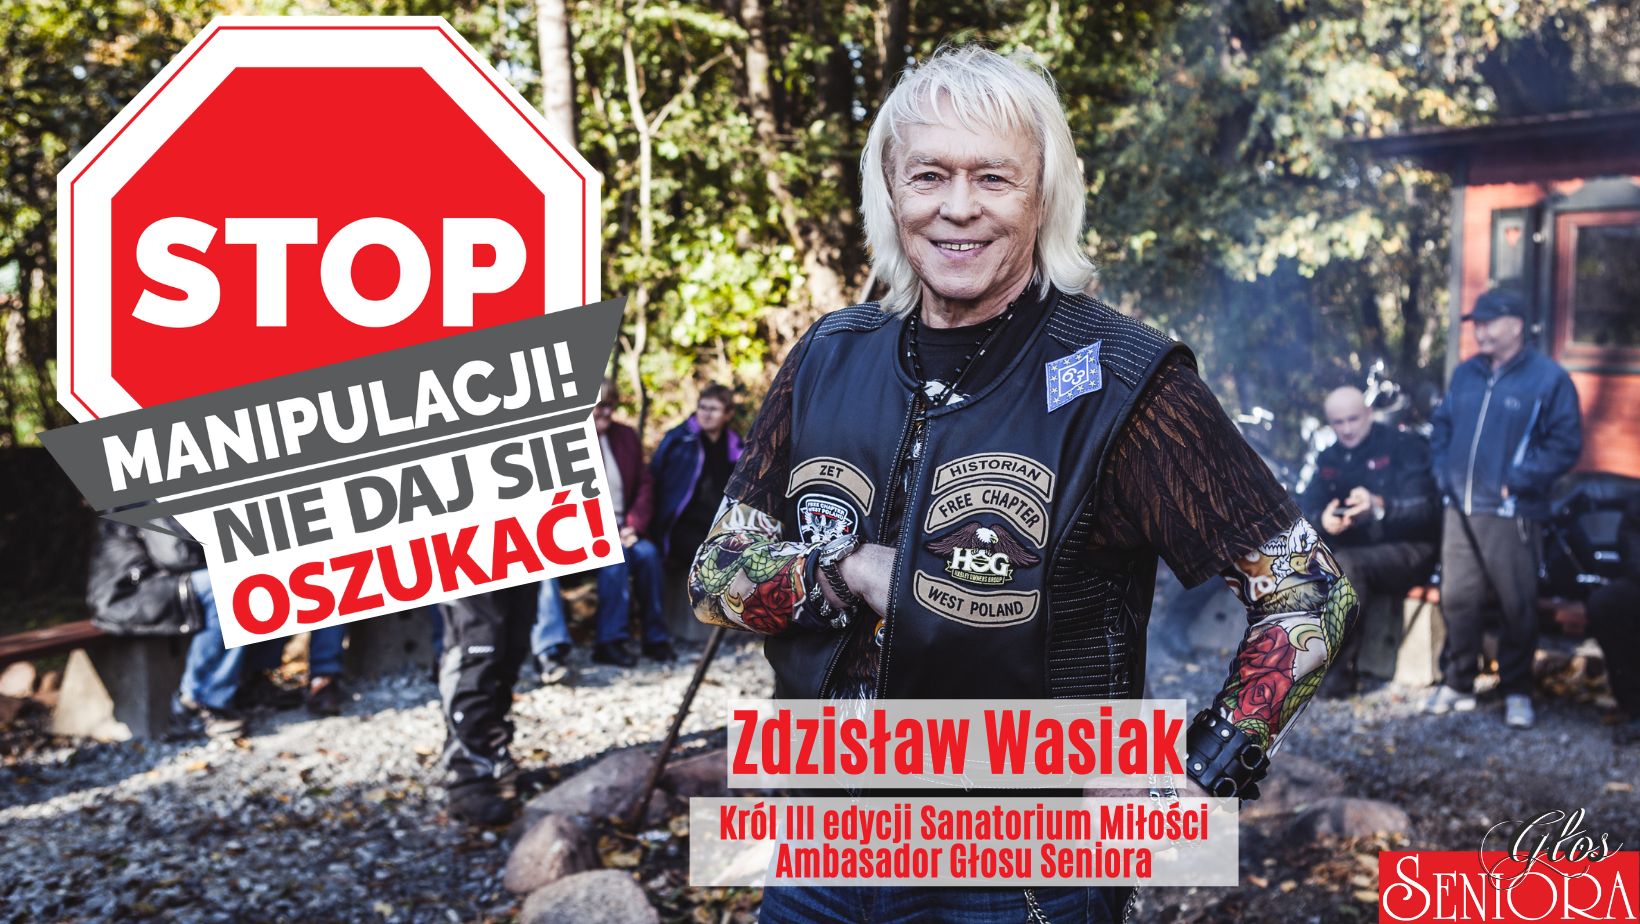 Zdzisław Wasiak i nazwa akacji na banerze.